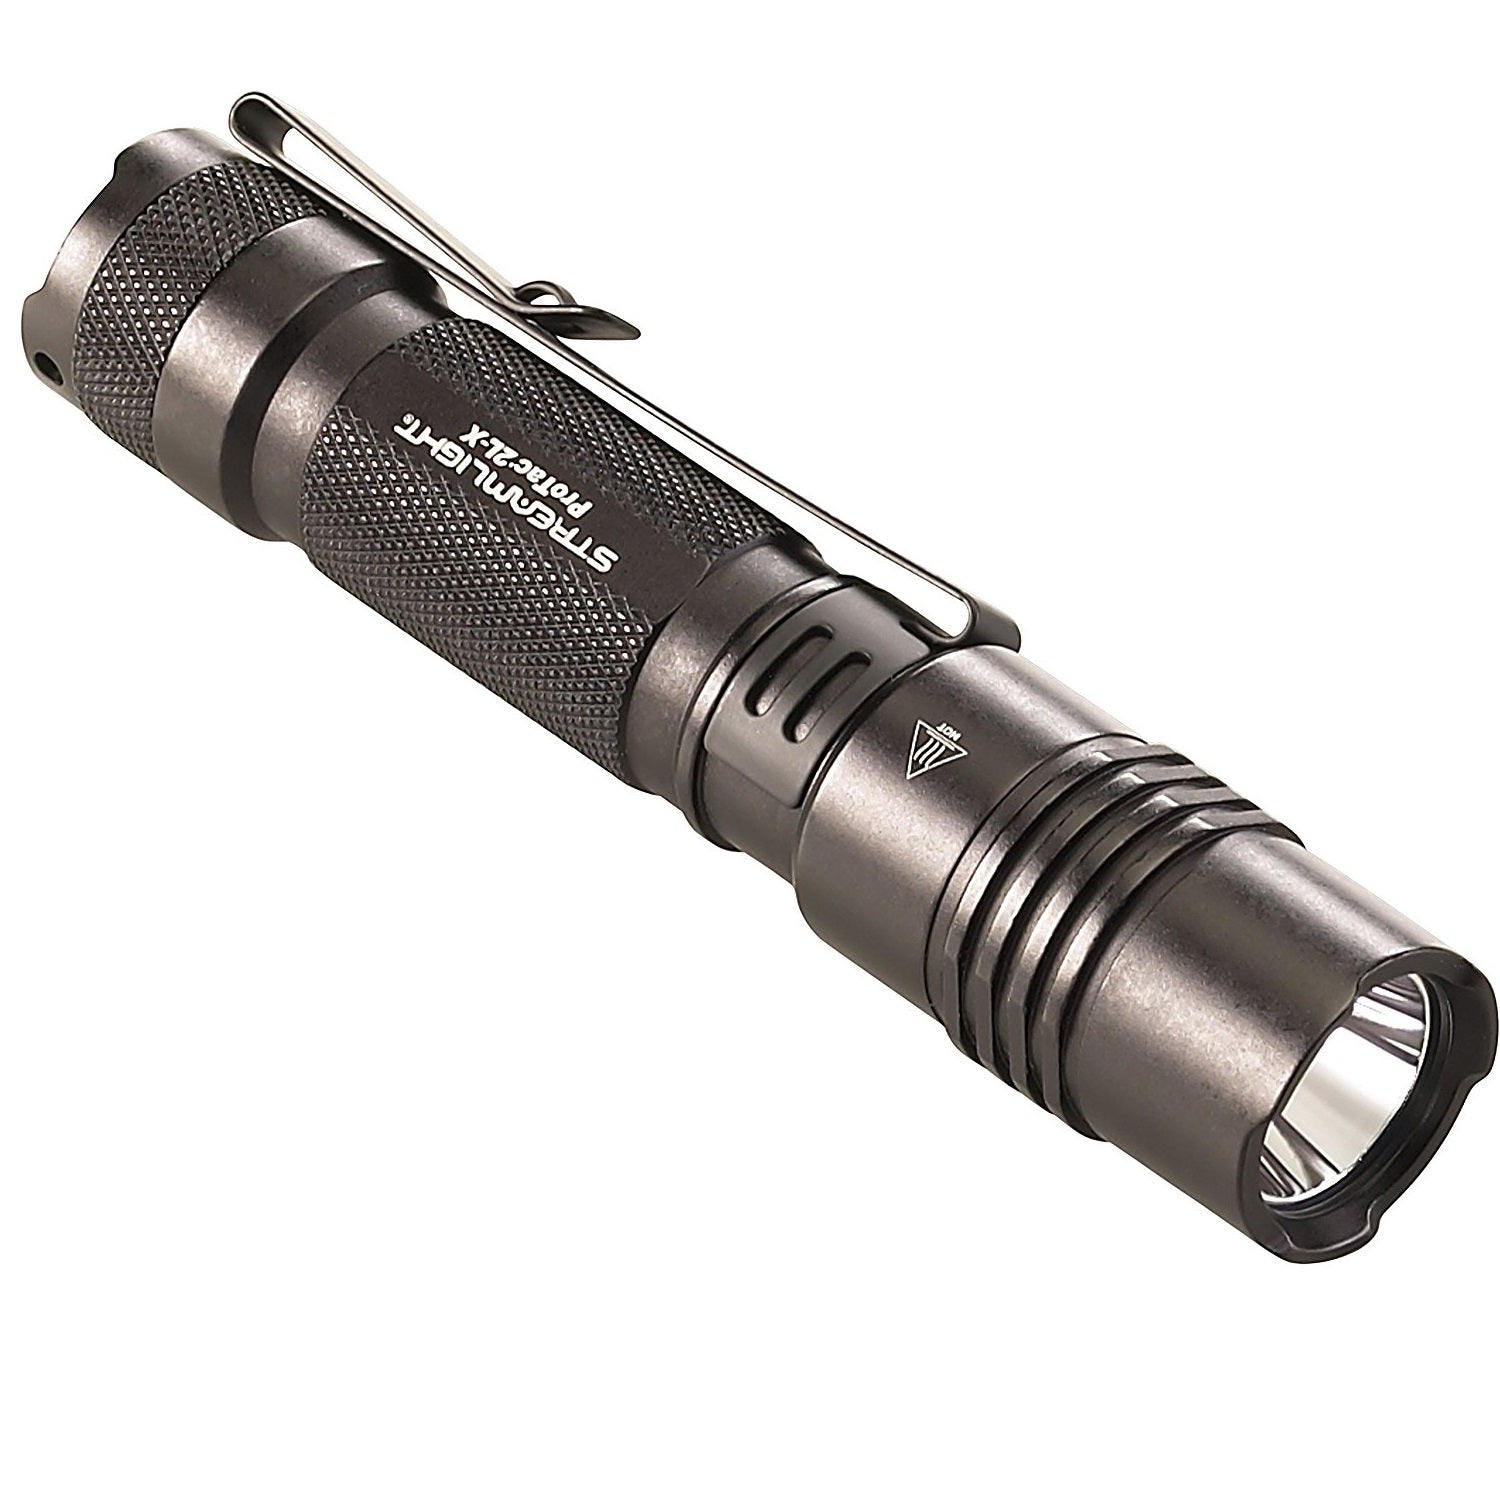 Streamlight ProTac 2L X USB 500 Lumens Flashlight - Black